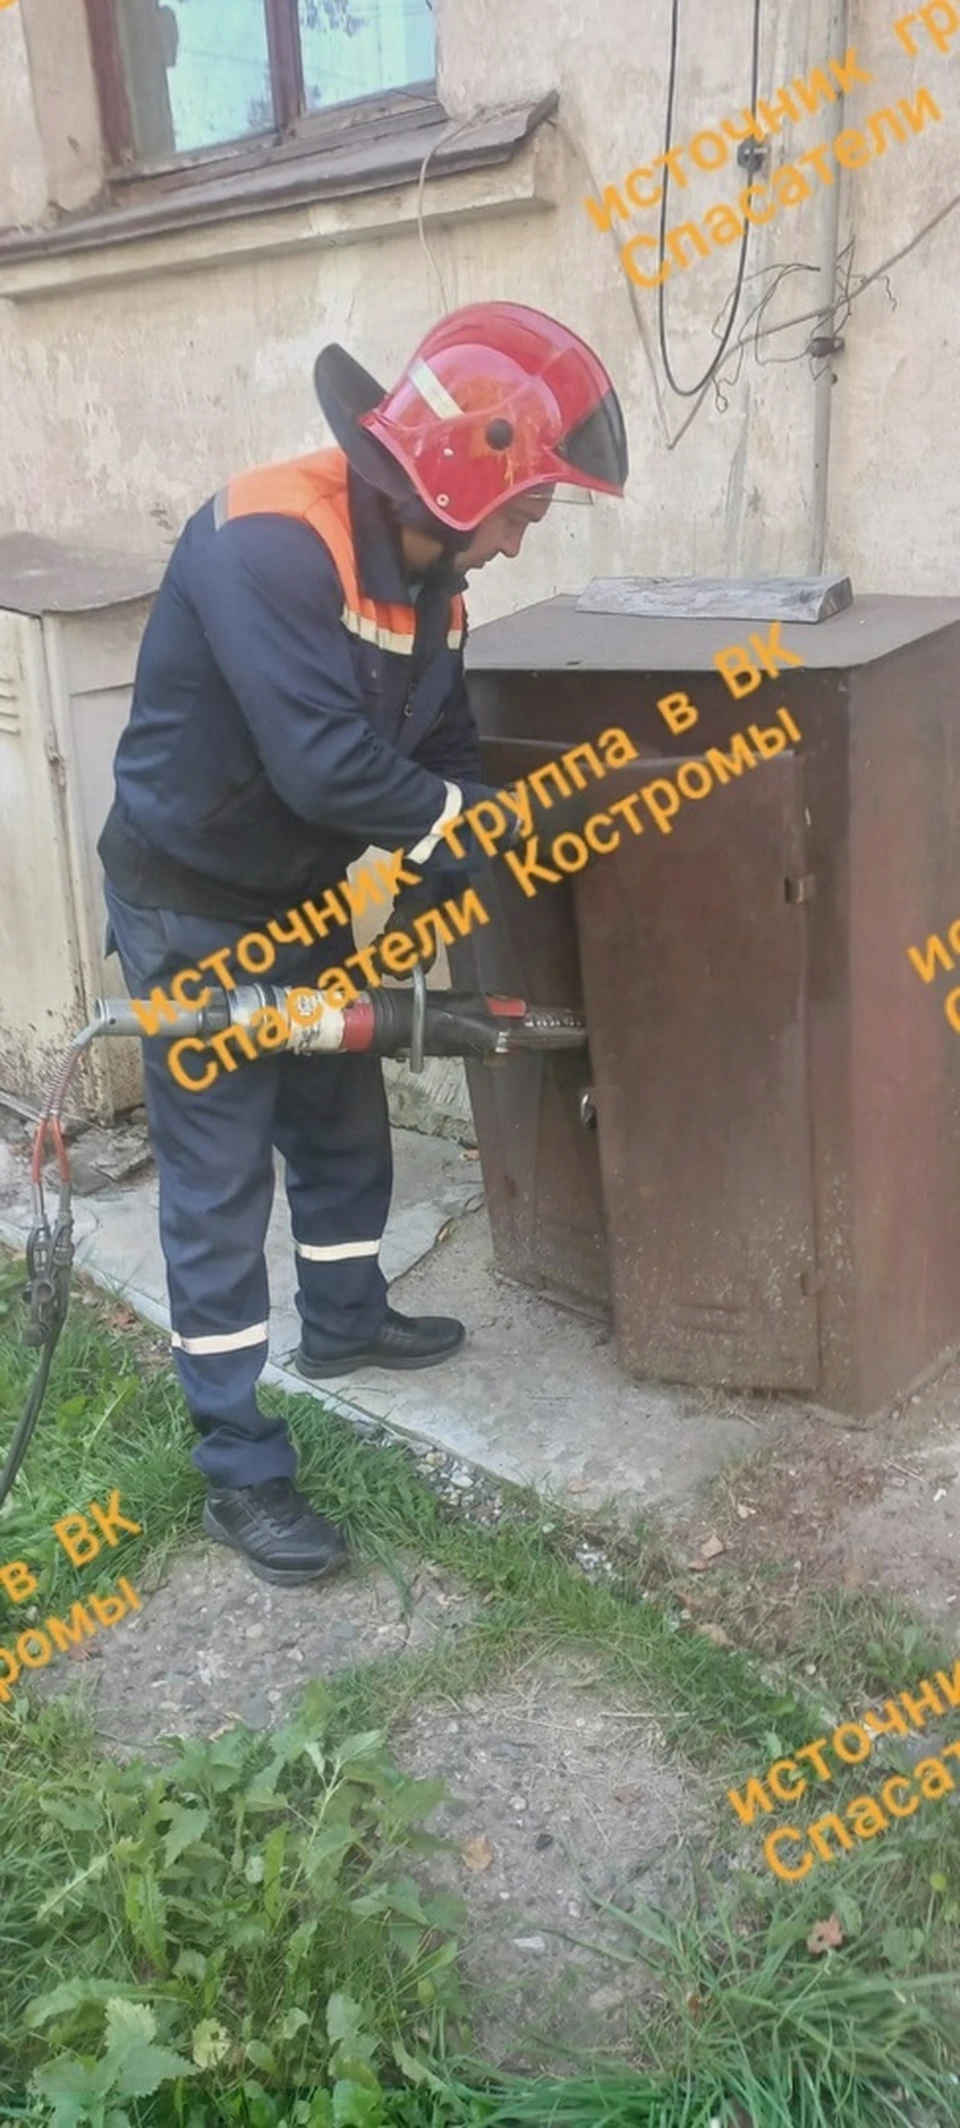 Фото: ОГБУ "Пожарно-спасательная служба" Костромской области